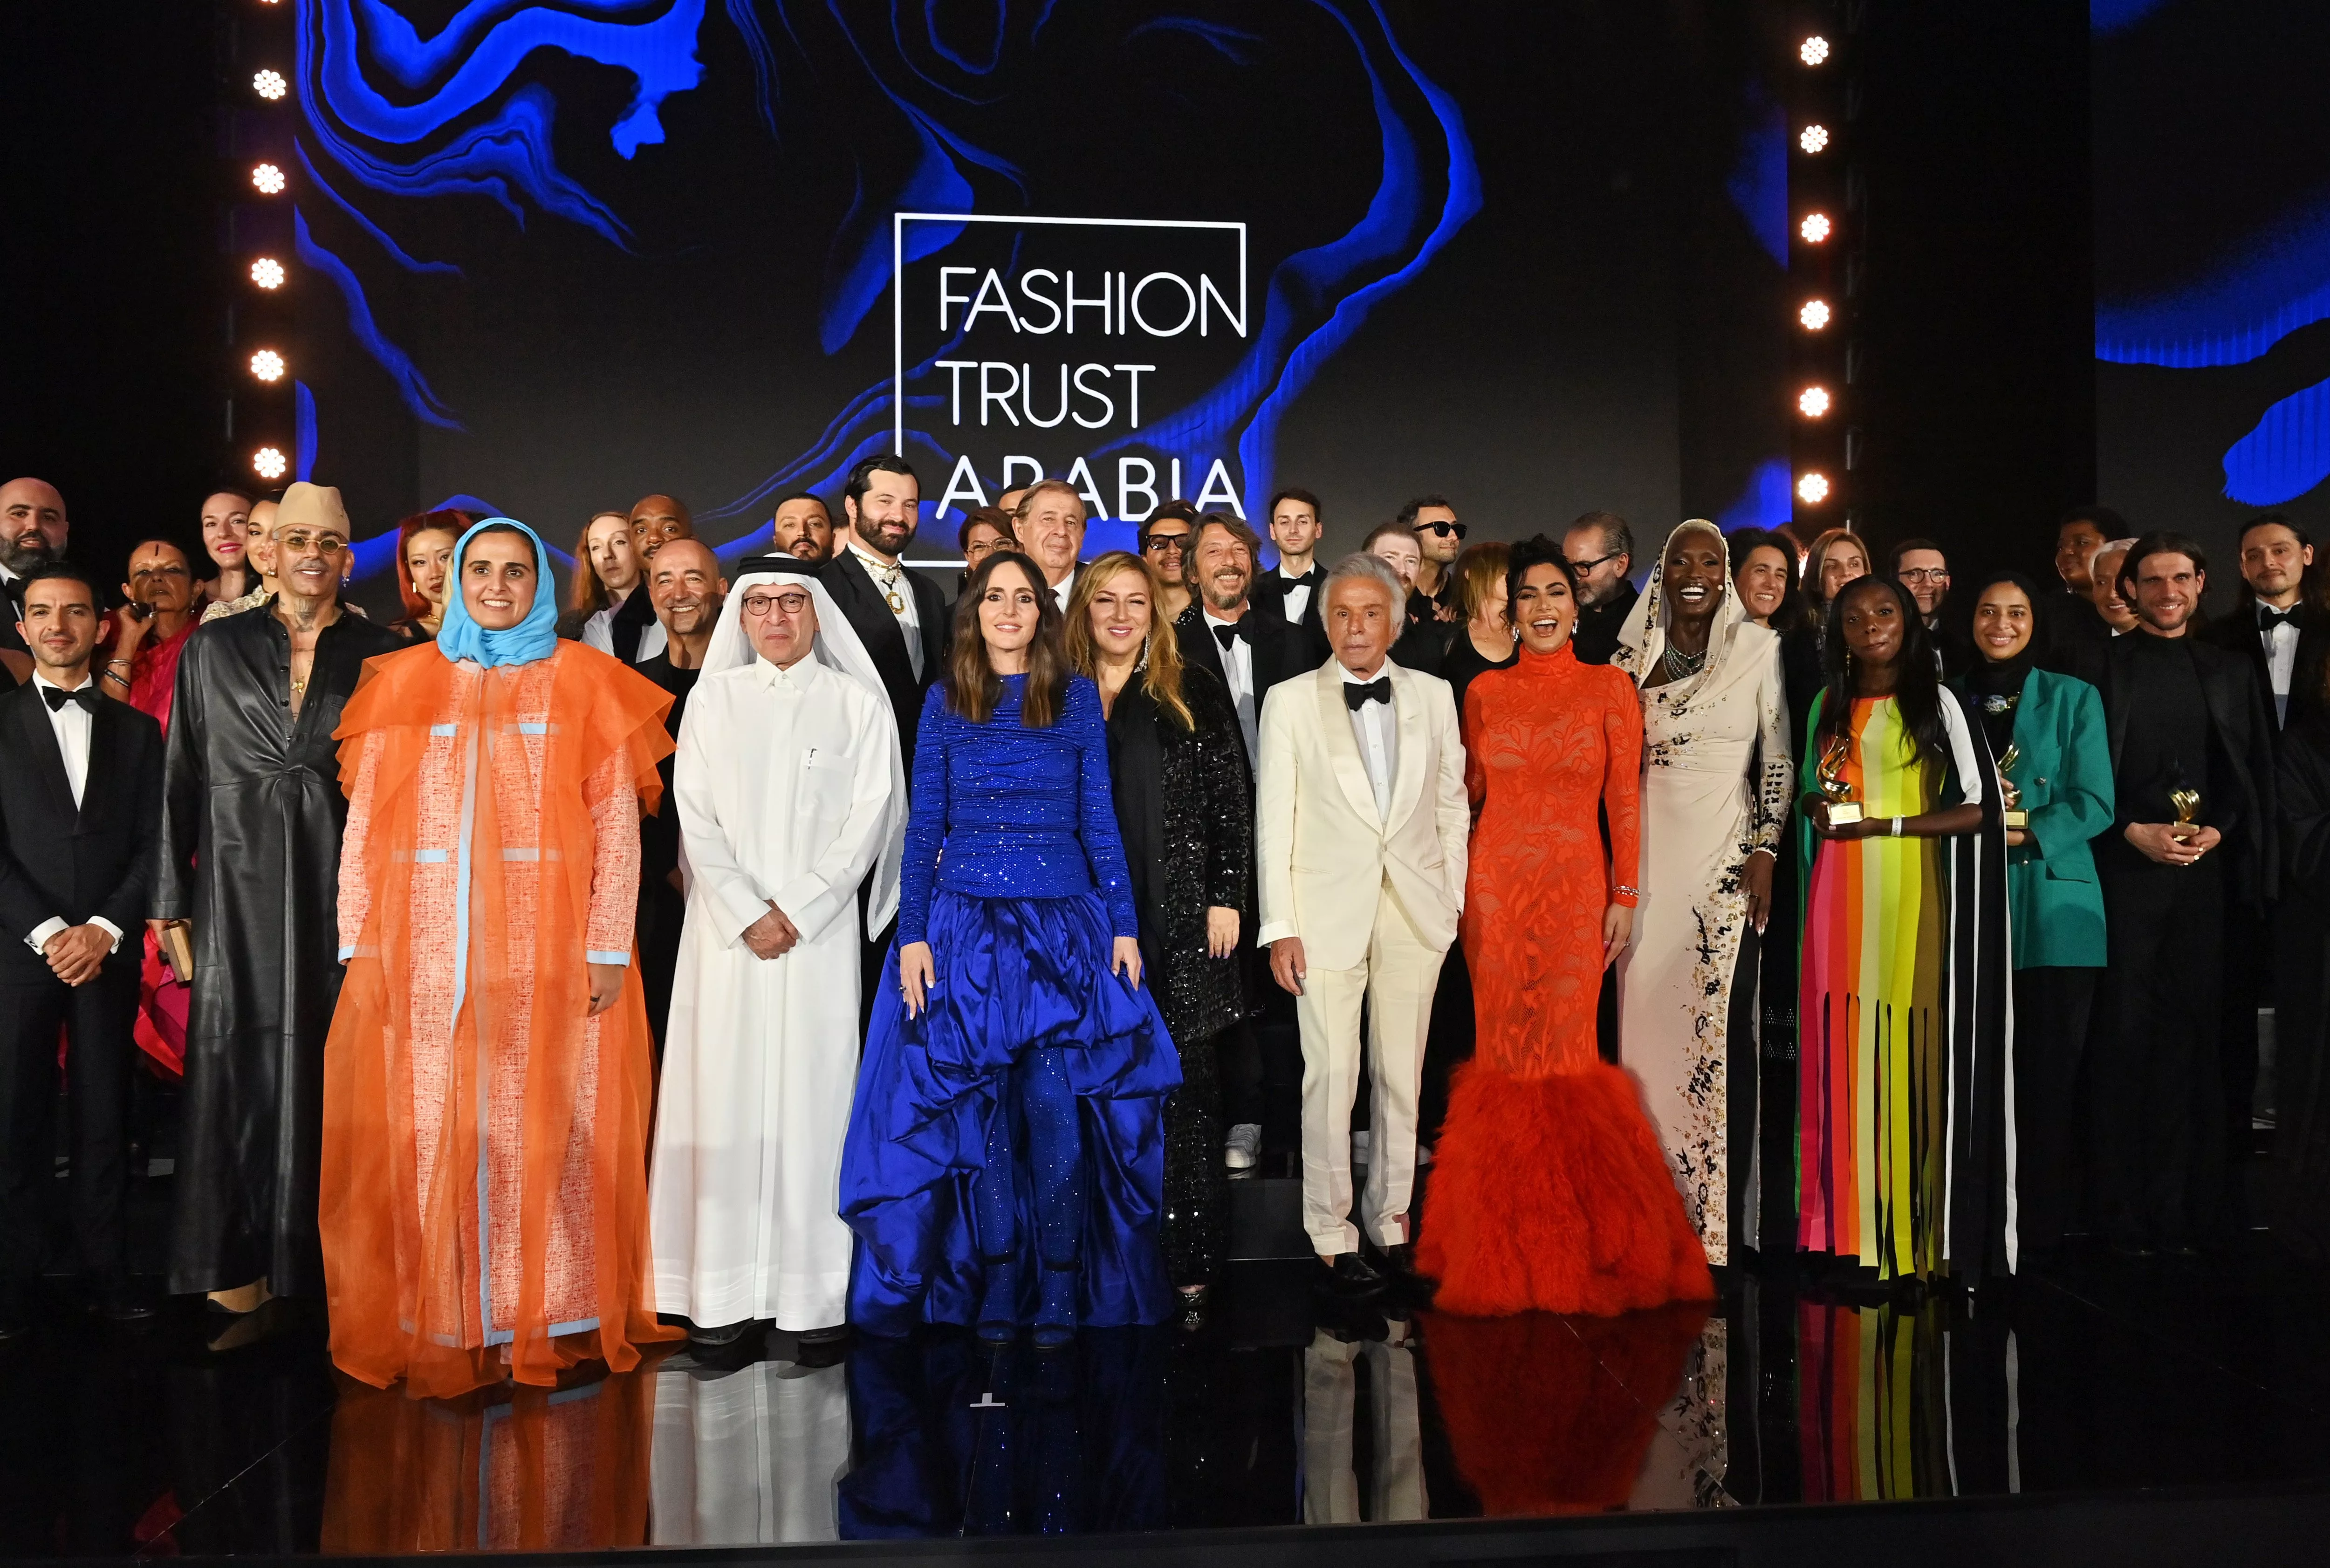 حفل توزيع جوائز فاشن تراست ارابيا 2022 fashion trust arabia 2022